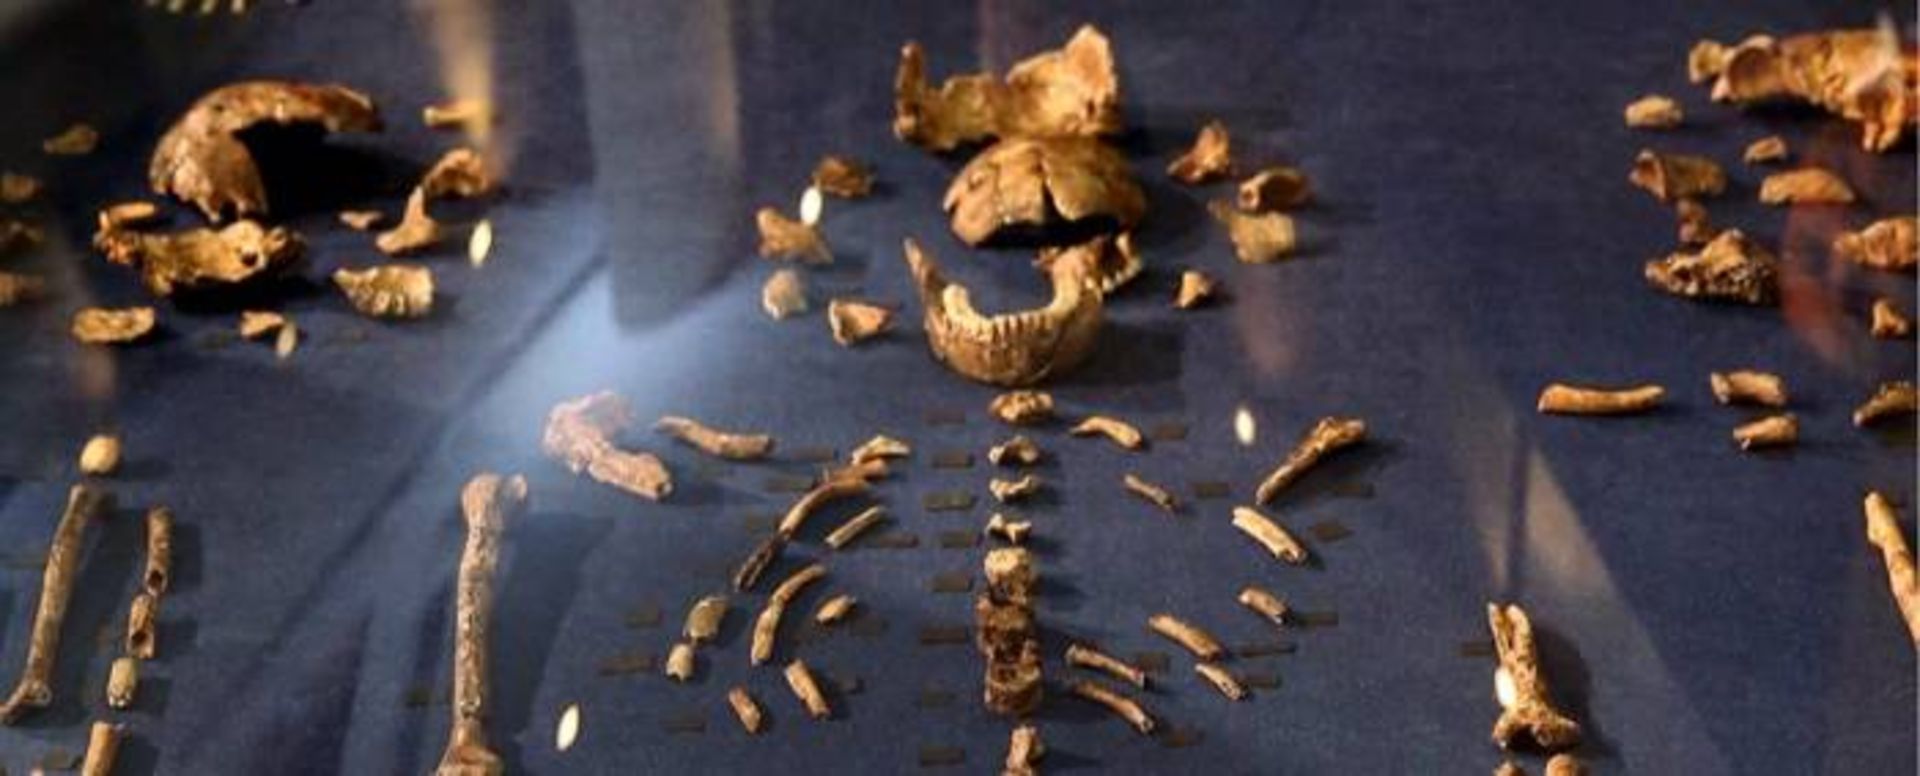 مرجع متخصصين ايران استخوان انسان هاي باستاني